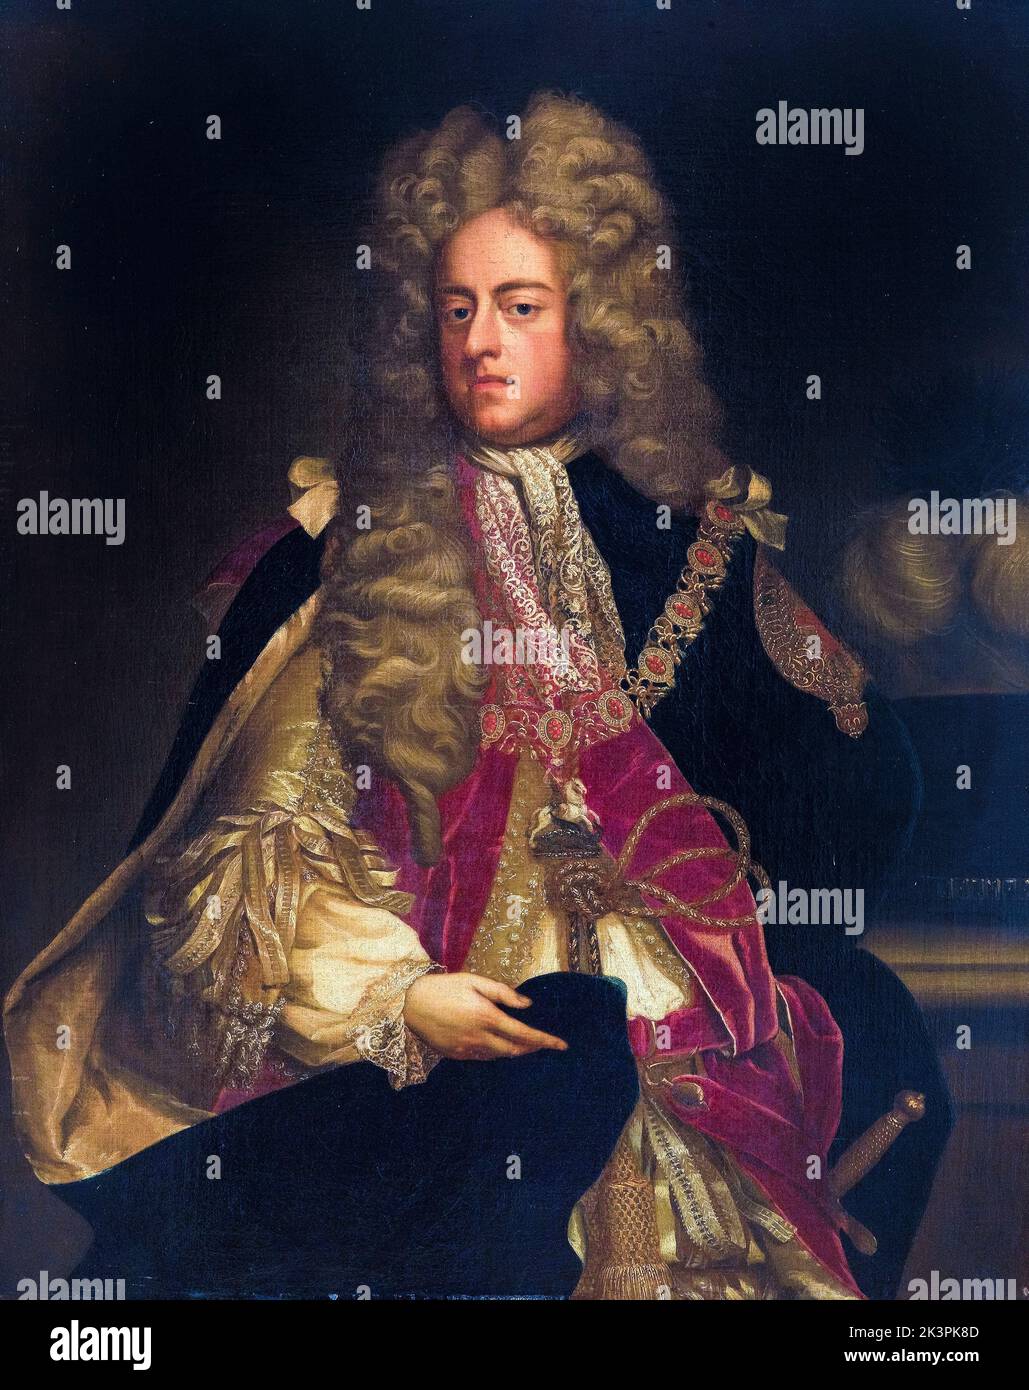 König Georg I. von Großbritannien und Irland (1660-1727), Regierungszeit (1714-1727), Porträt in Öl auf Leinwand von Künstler der englischen Schule, 1700-1799 Stockfoto